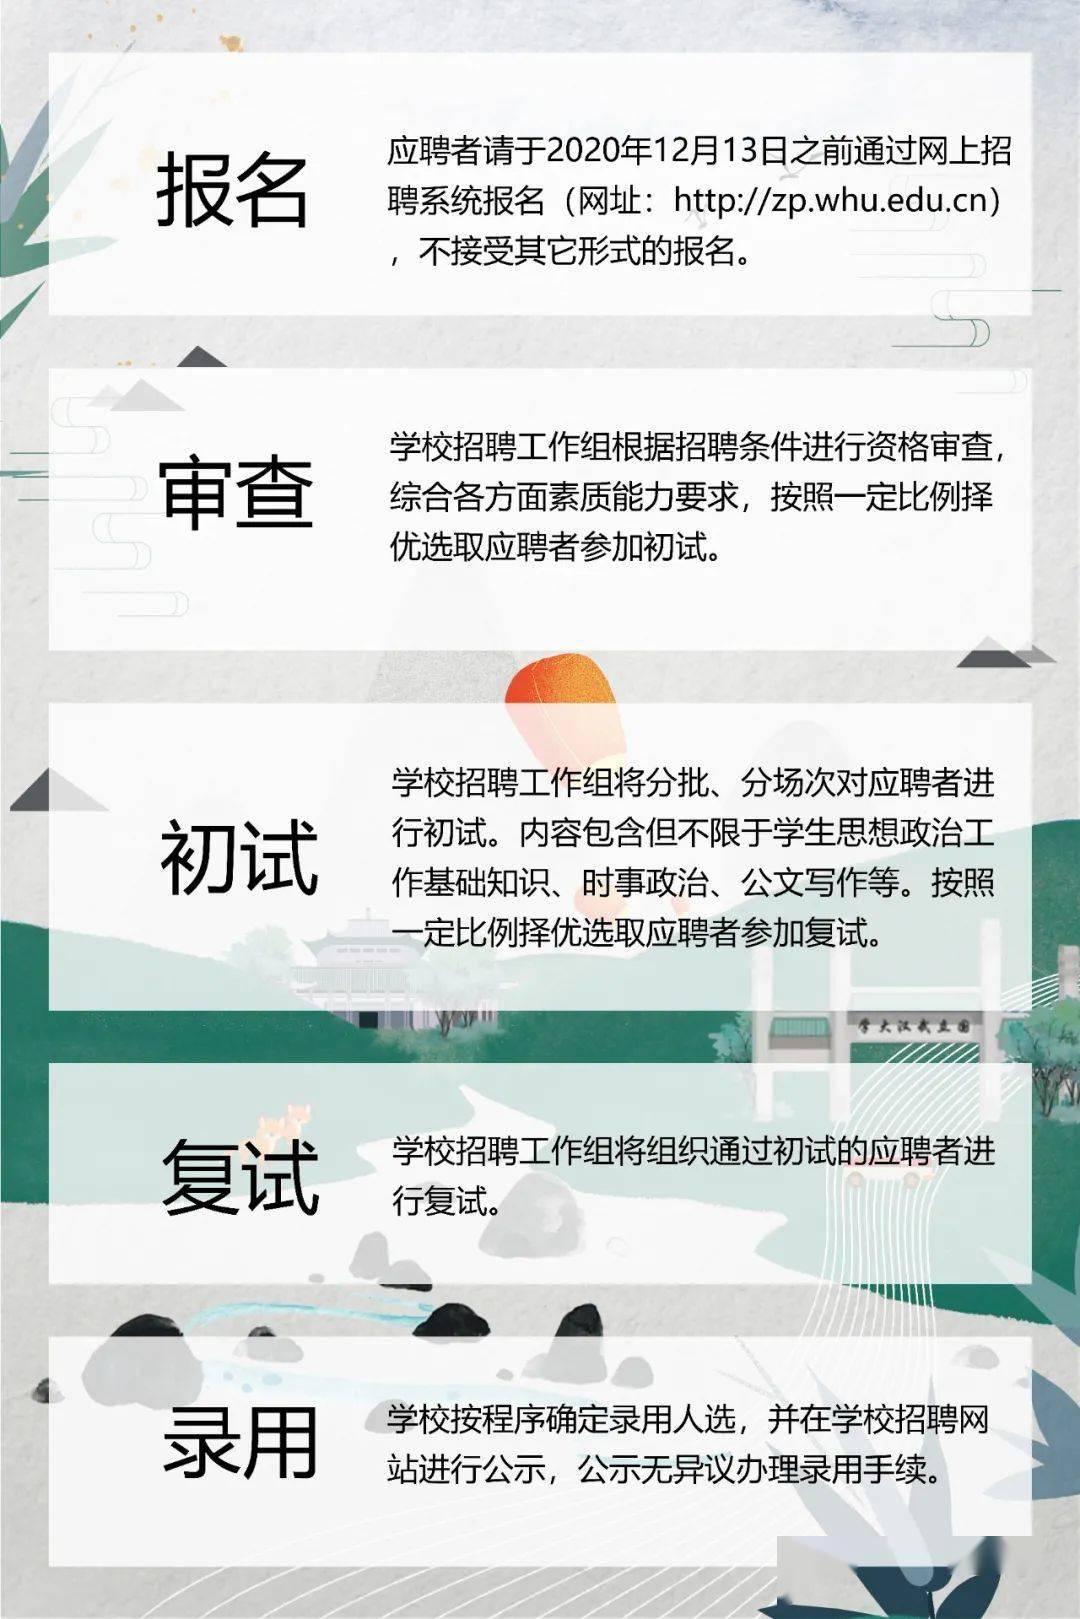 大学辅导员招聘_河南师范大学2019年政治辅导员招聘考核公告(2)